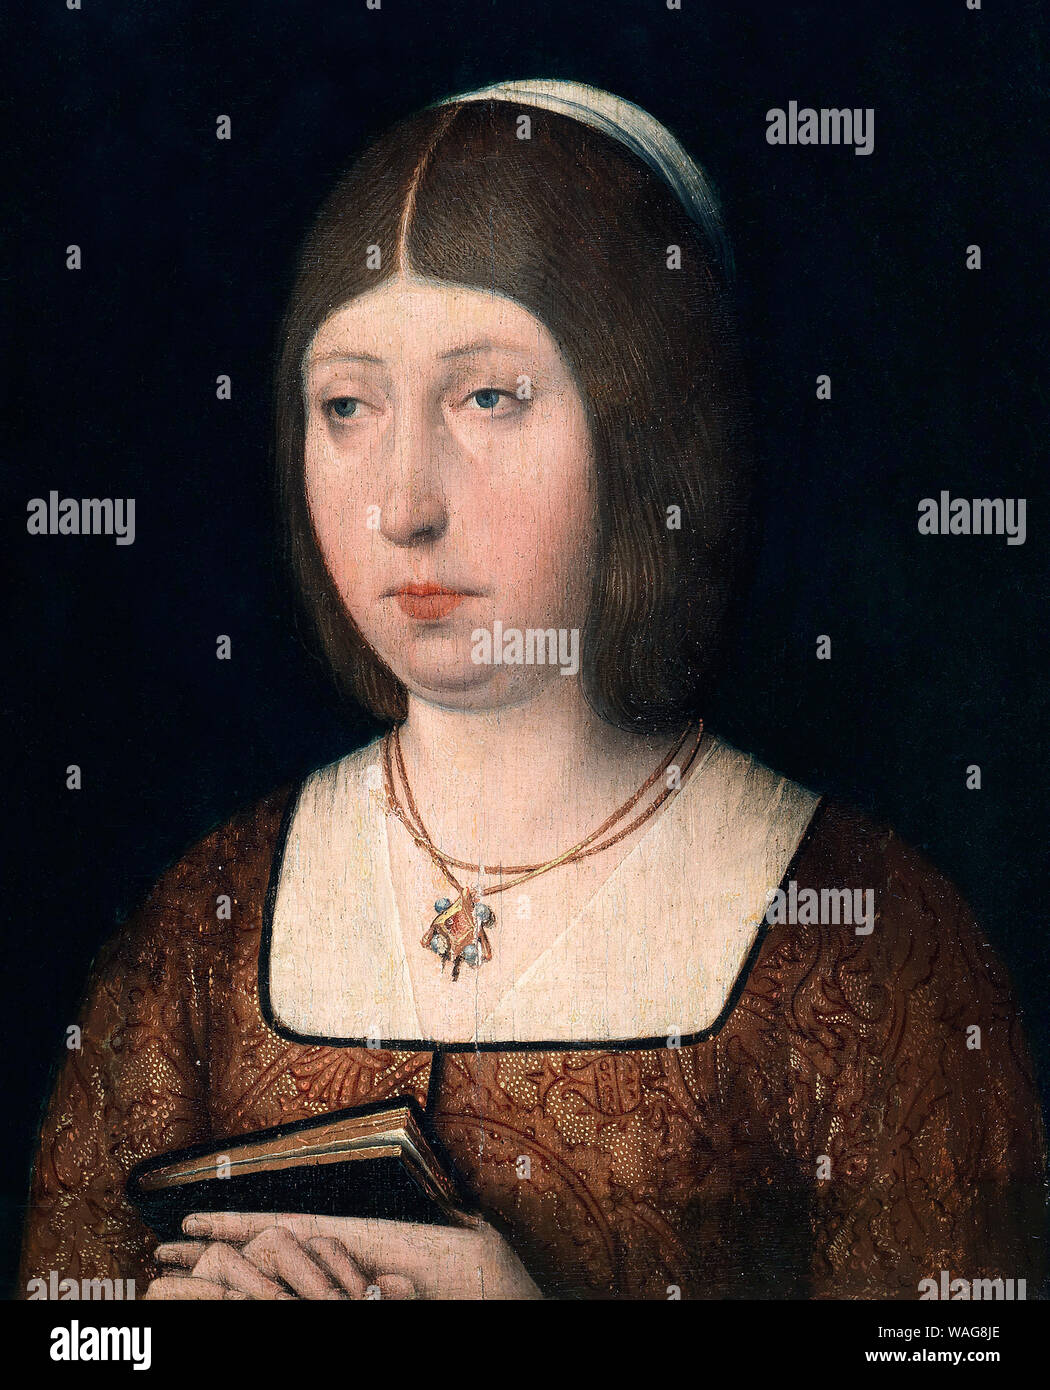 La Reina Isabel la Católica. La Reine Isabelle la Catholique, 1451-1504. Artiste inconnu. Sur l'affichage dans le Museo Nacional del Prado, Madrid, Espagne. Banque D'Images